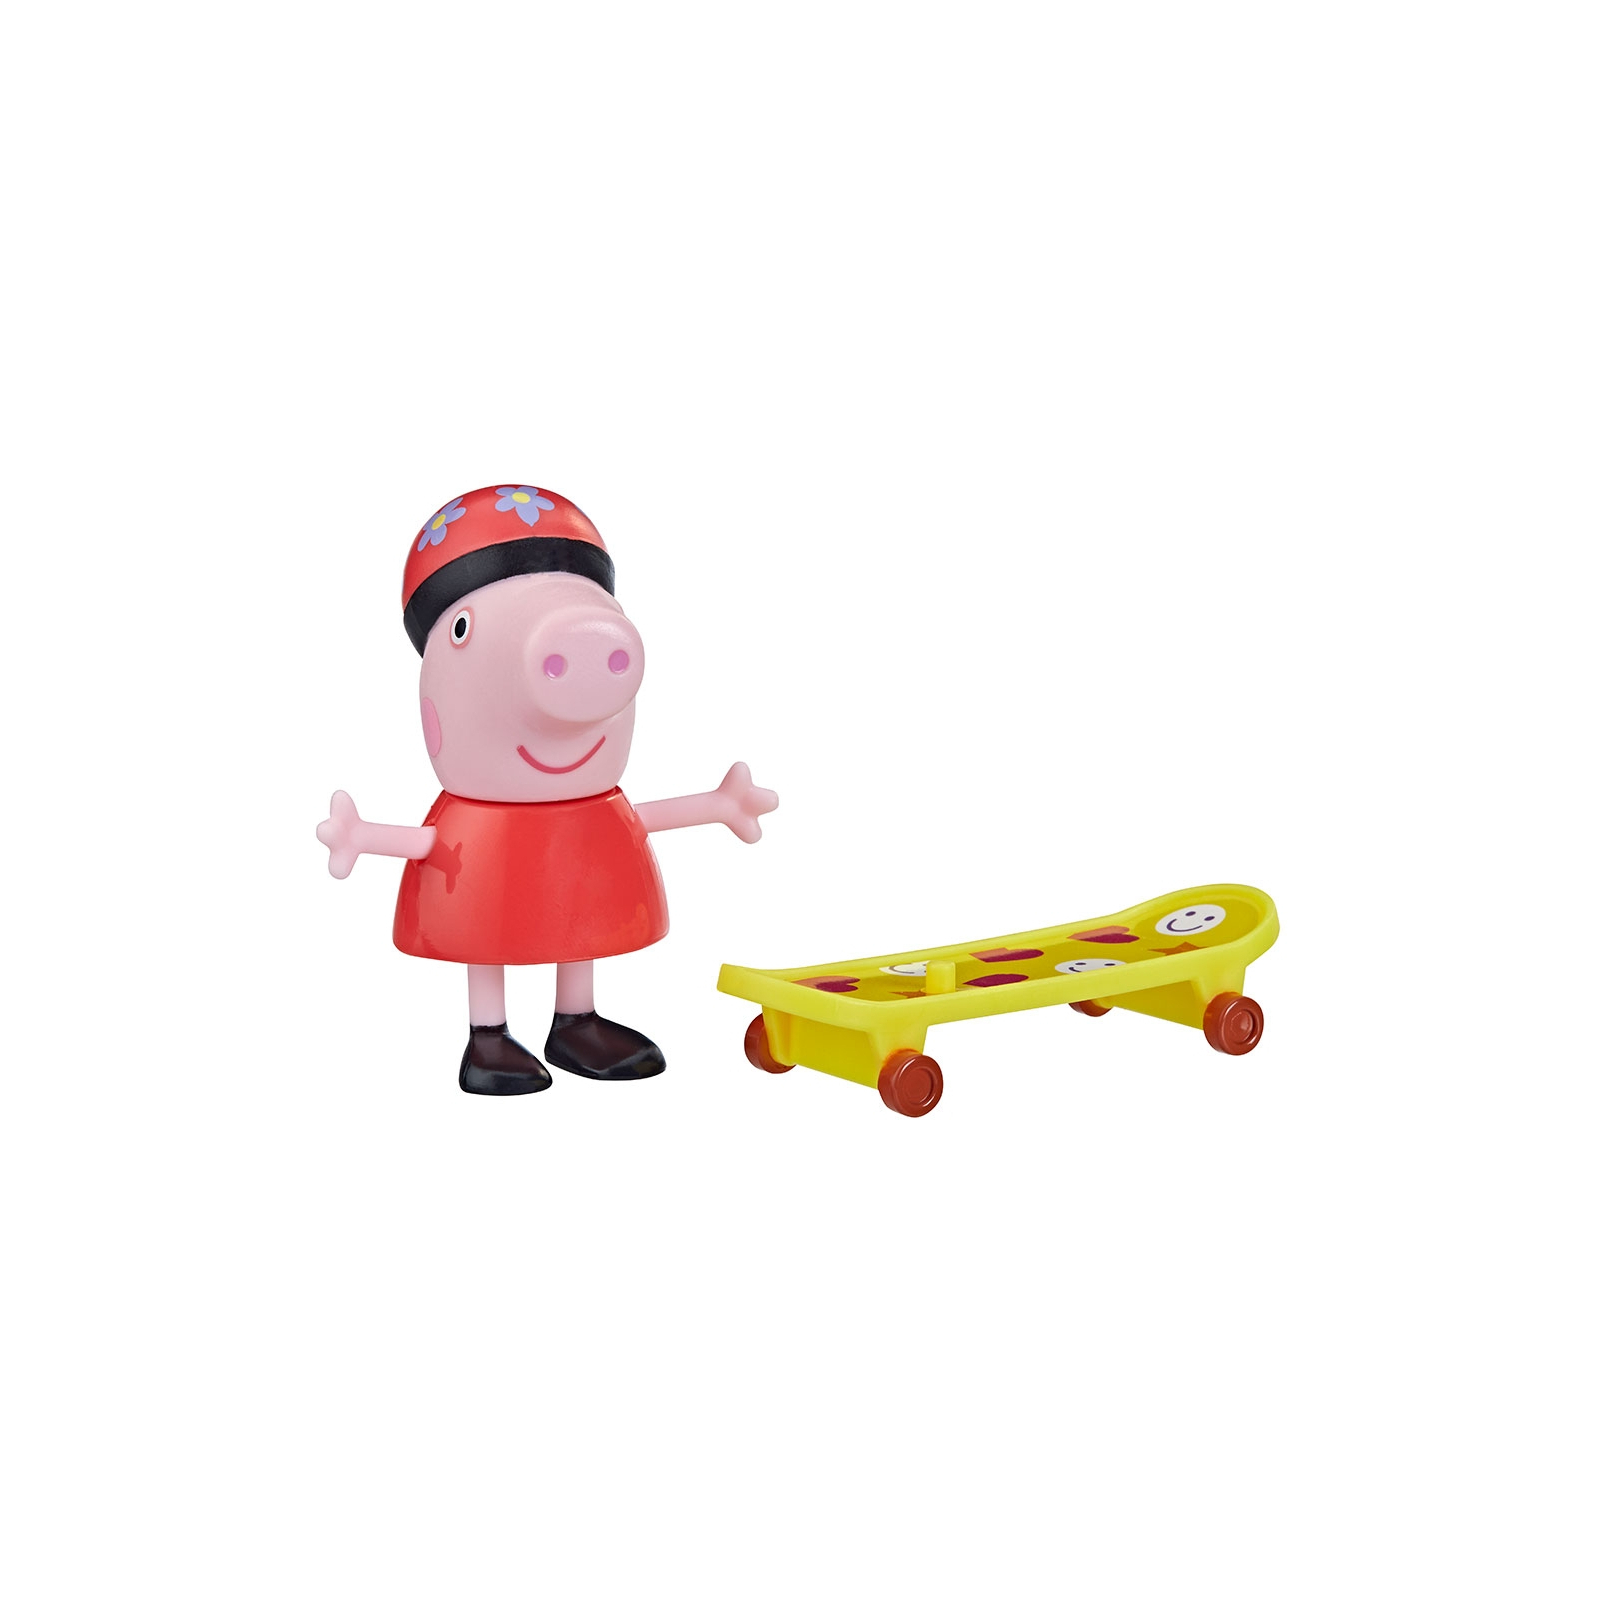 Фігурка Peppa Pig Пеппа зі скейтбордом (F3758)